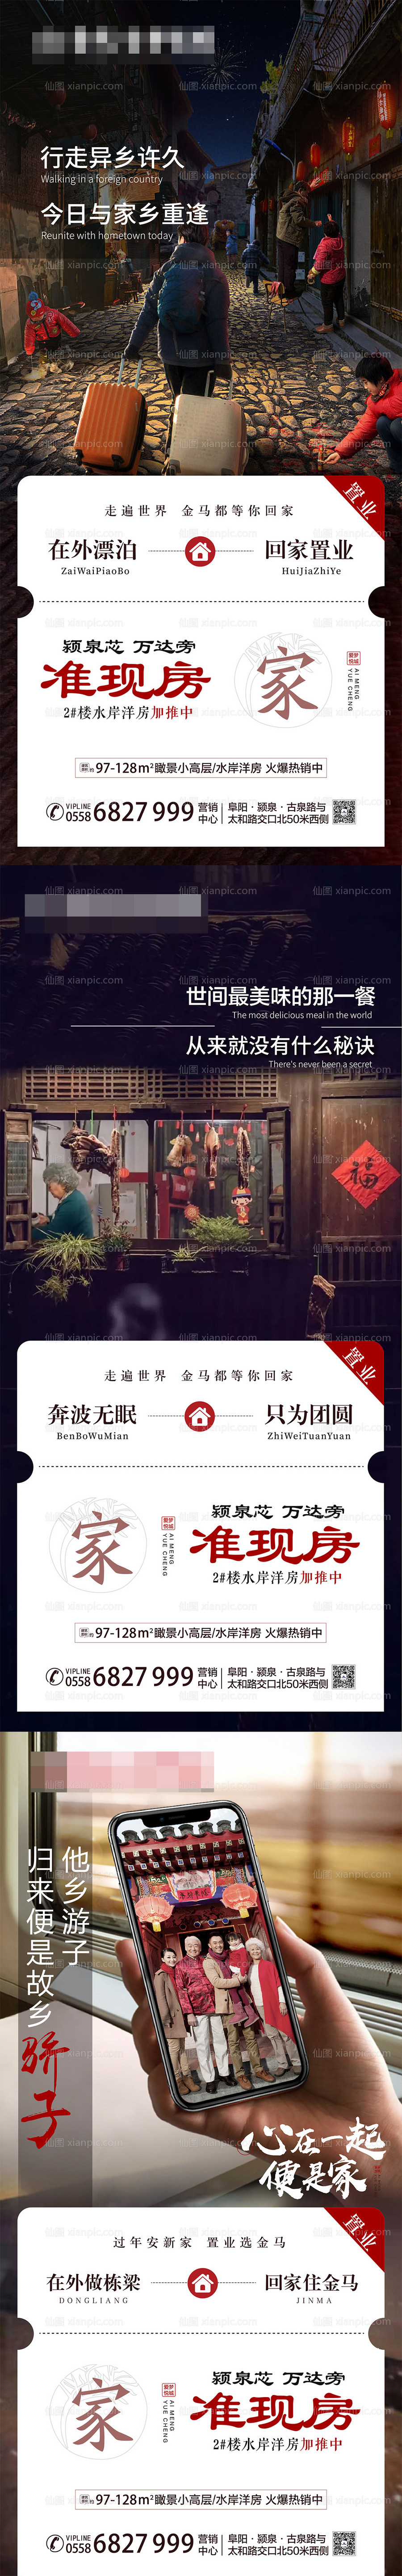 素材乐-地产春节返乡置业系列海报